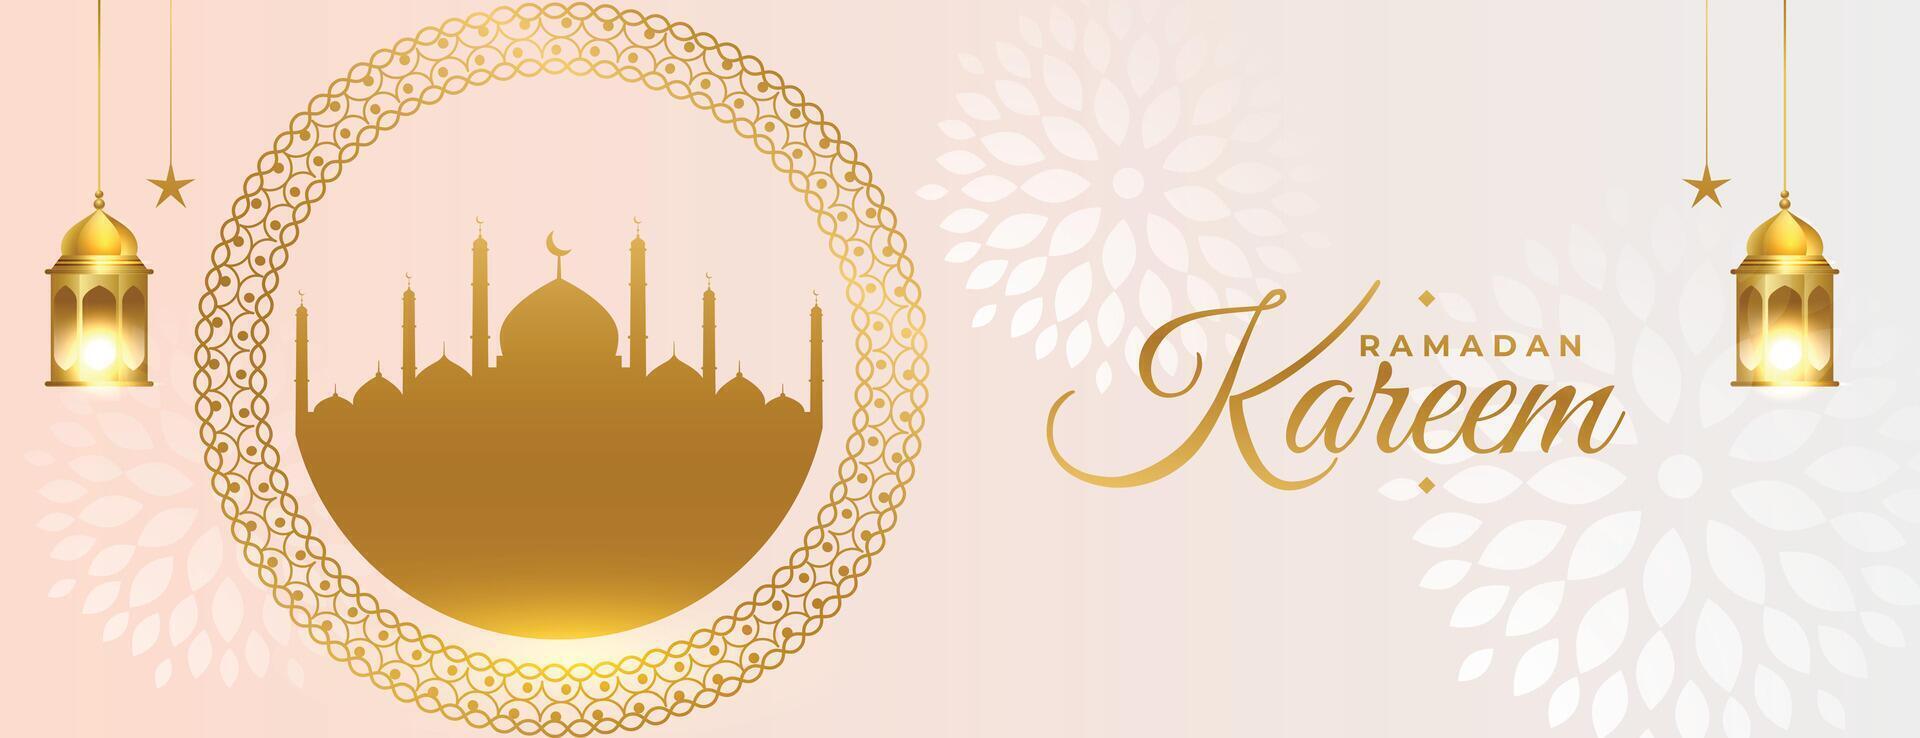 skön ramadan kareem välsignelse baner med arabicum dekoration vektor